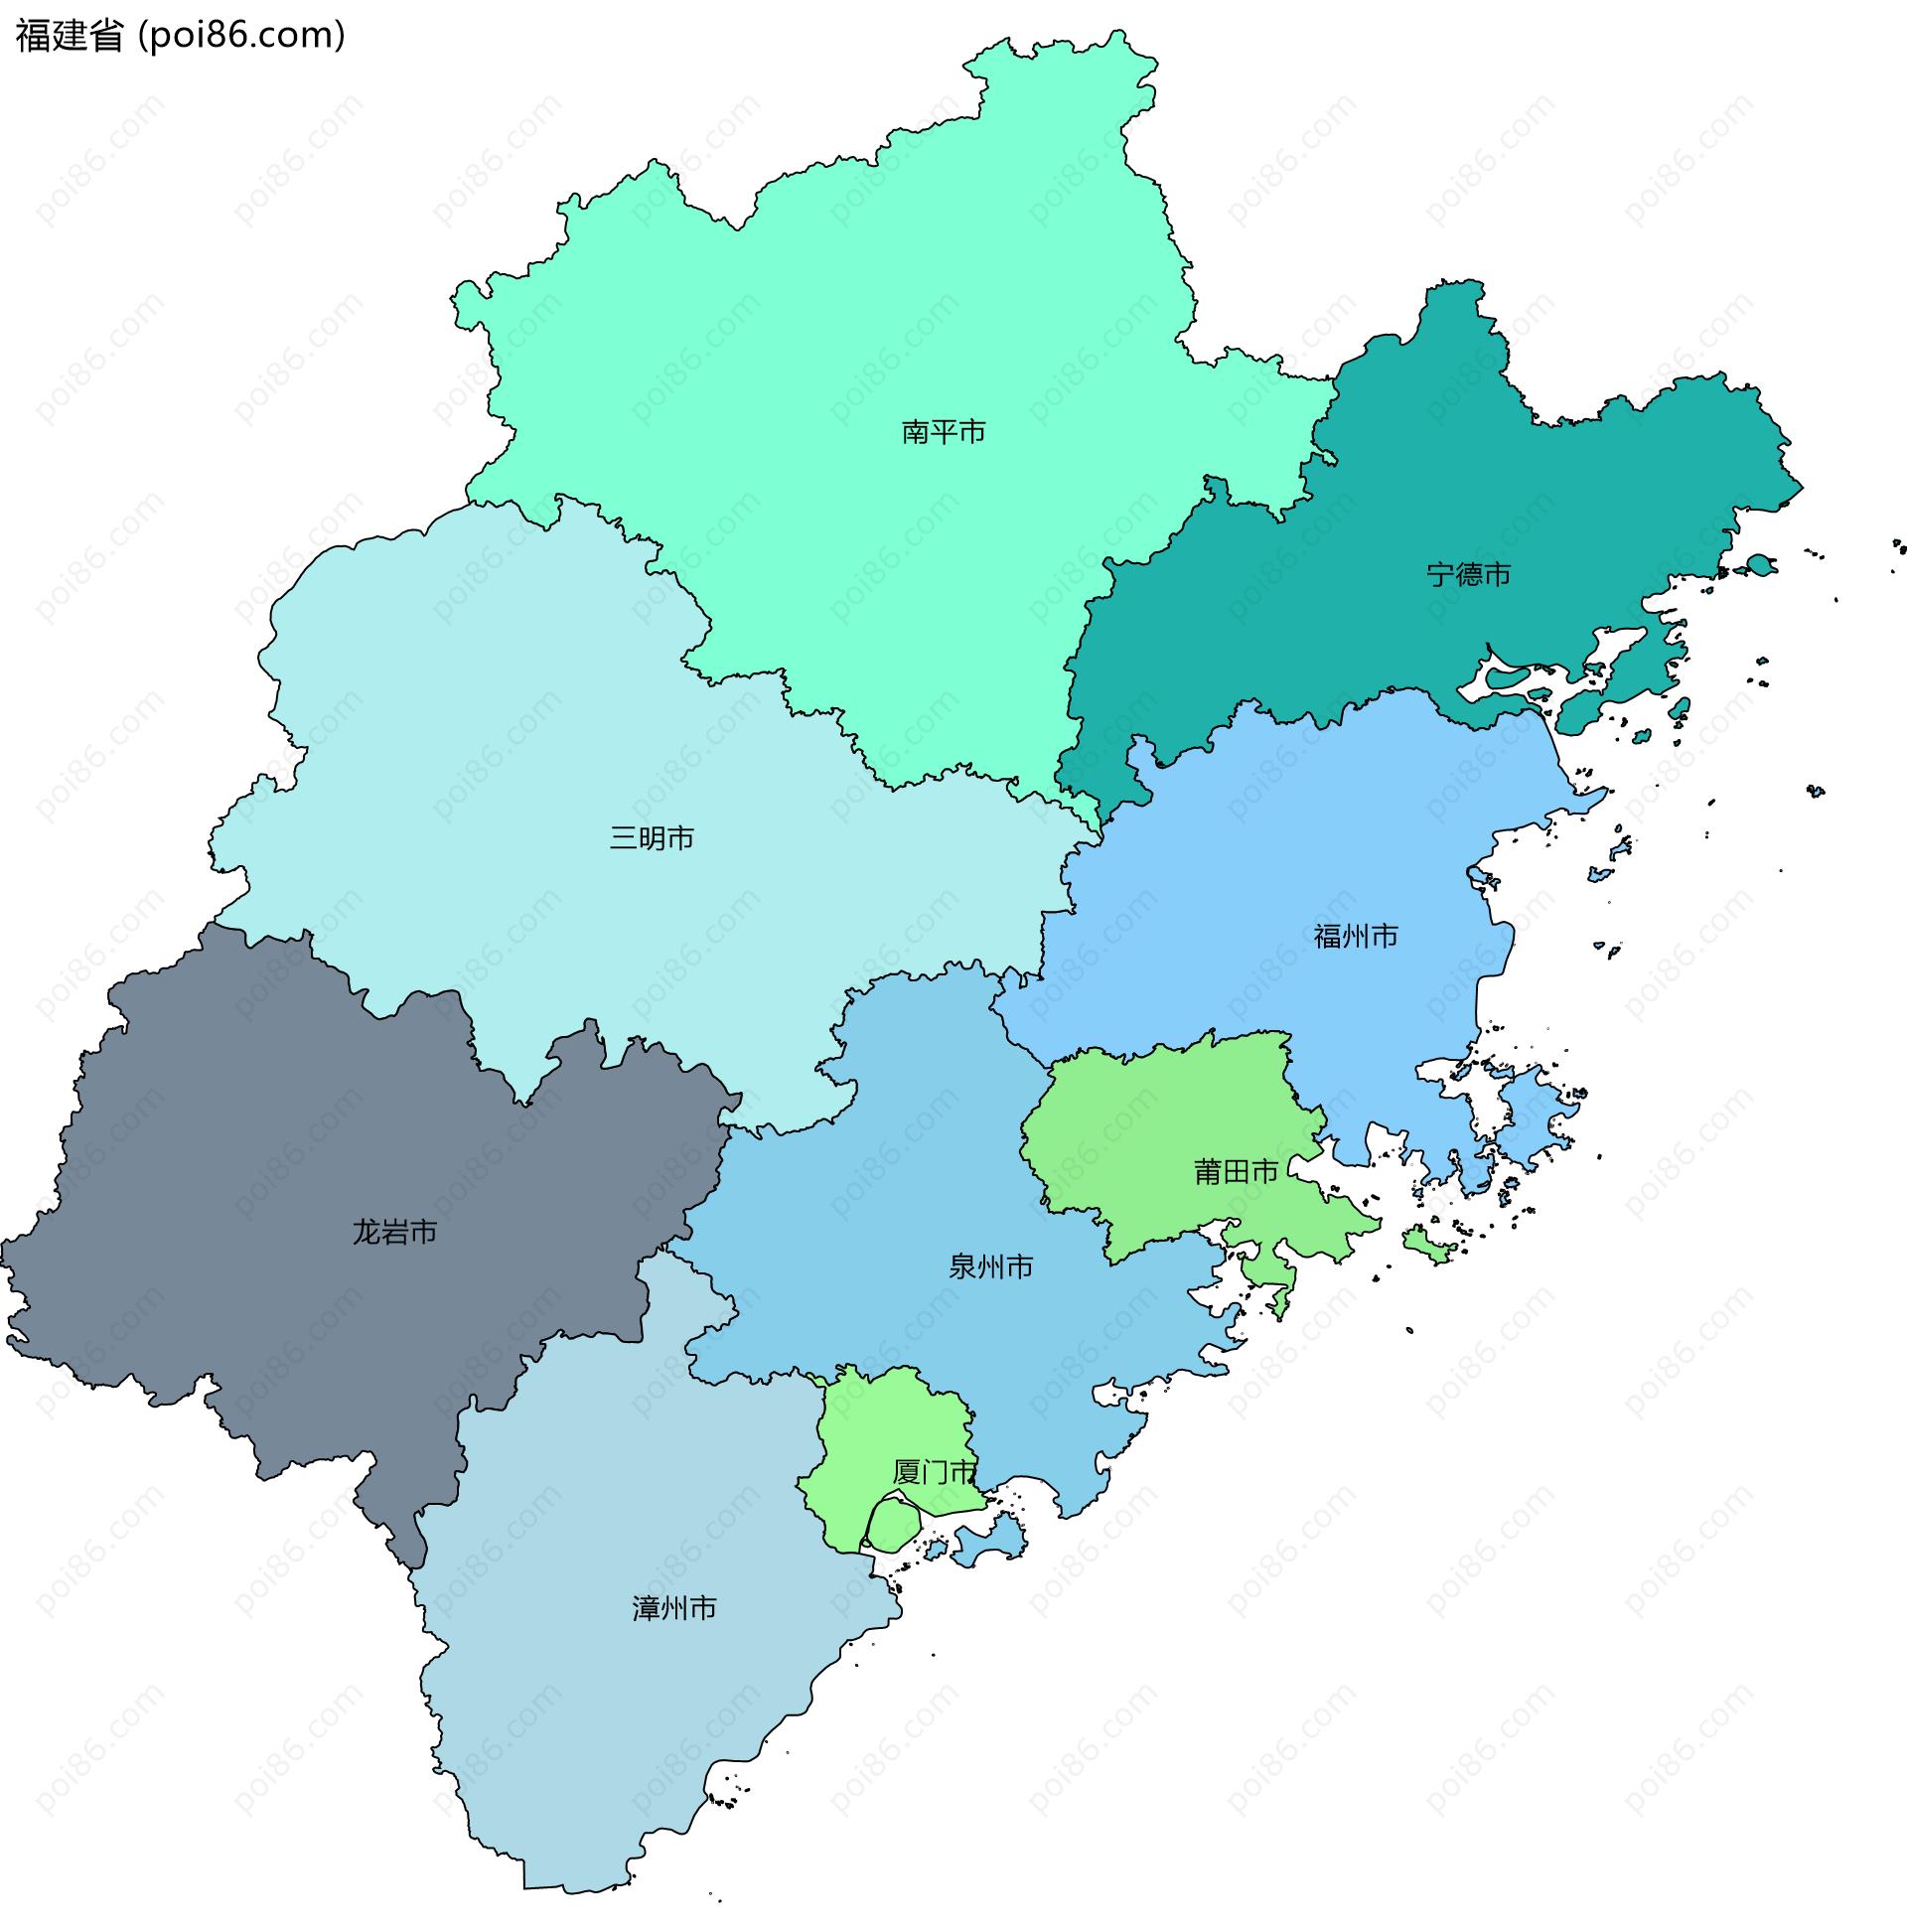 福建省边界地图